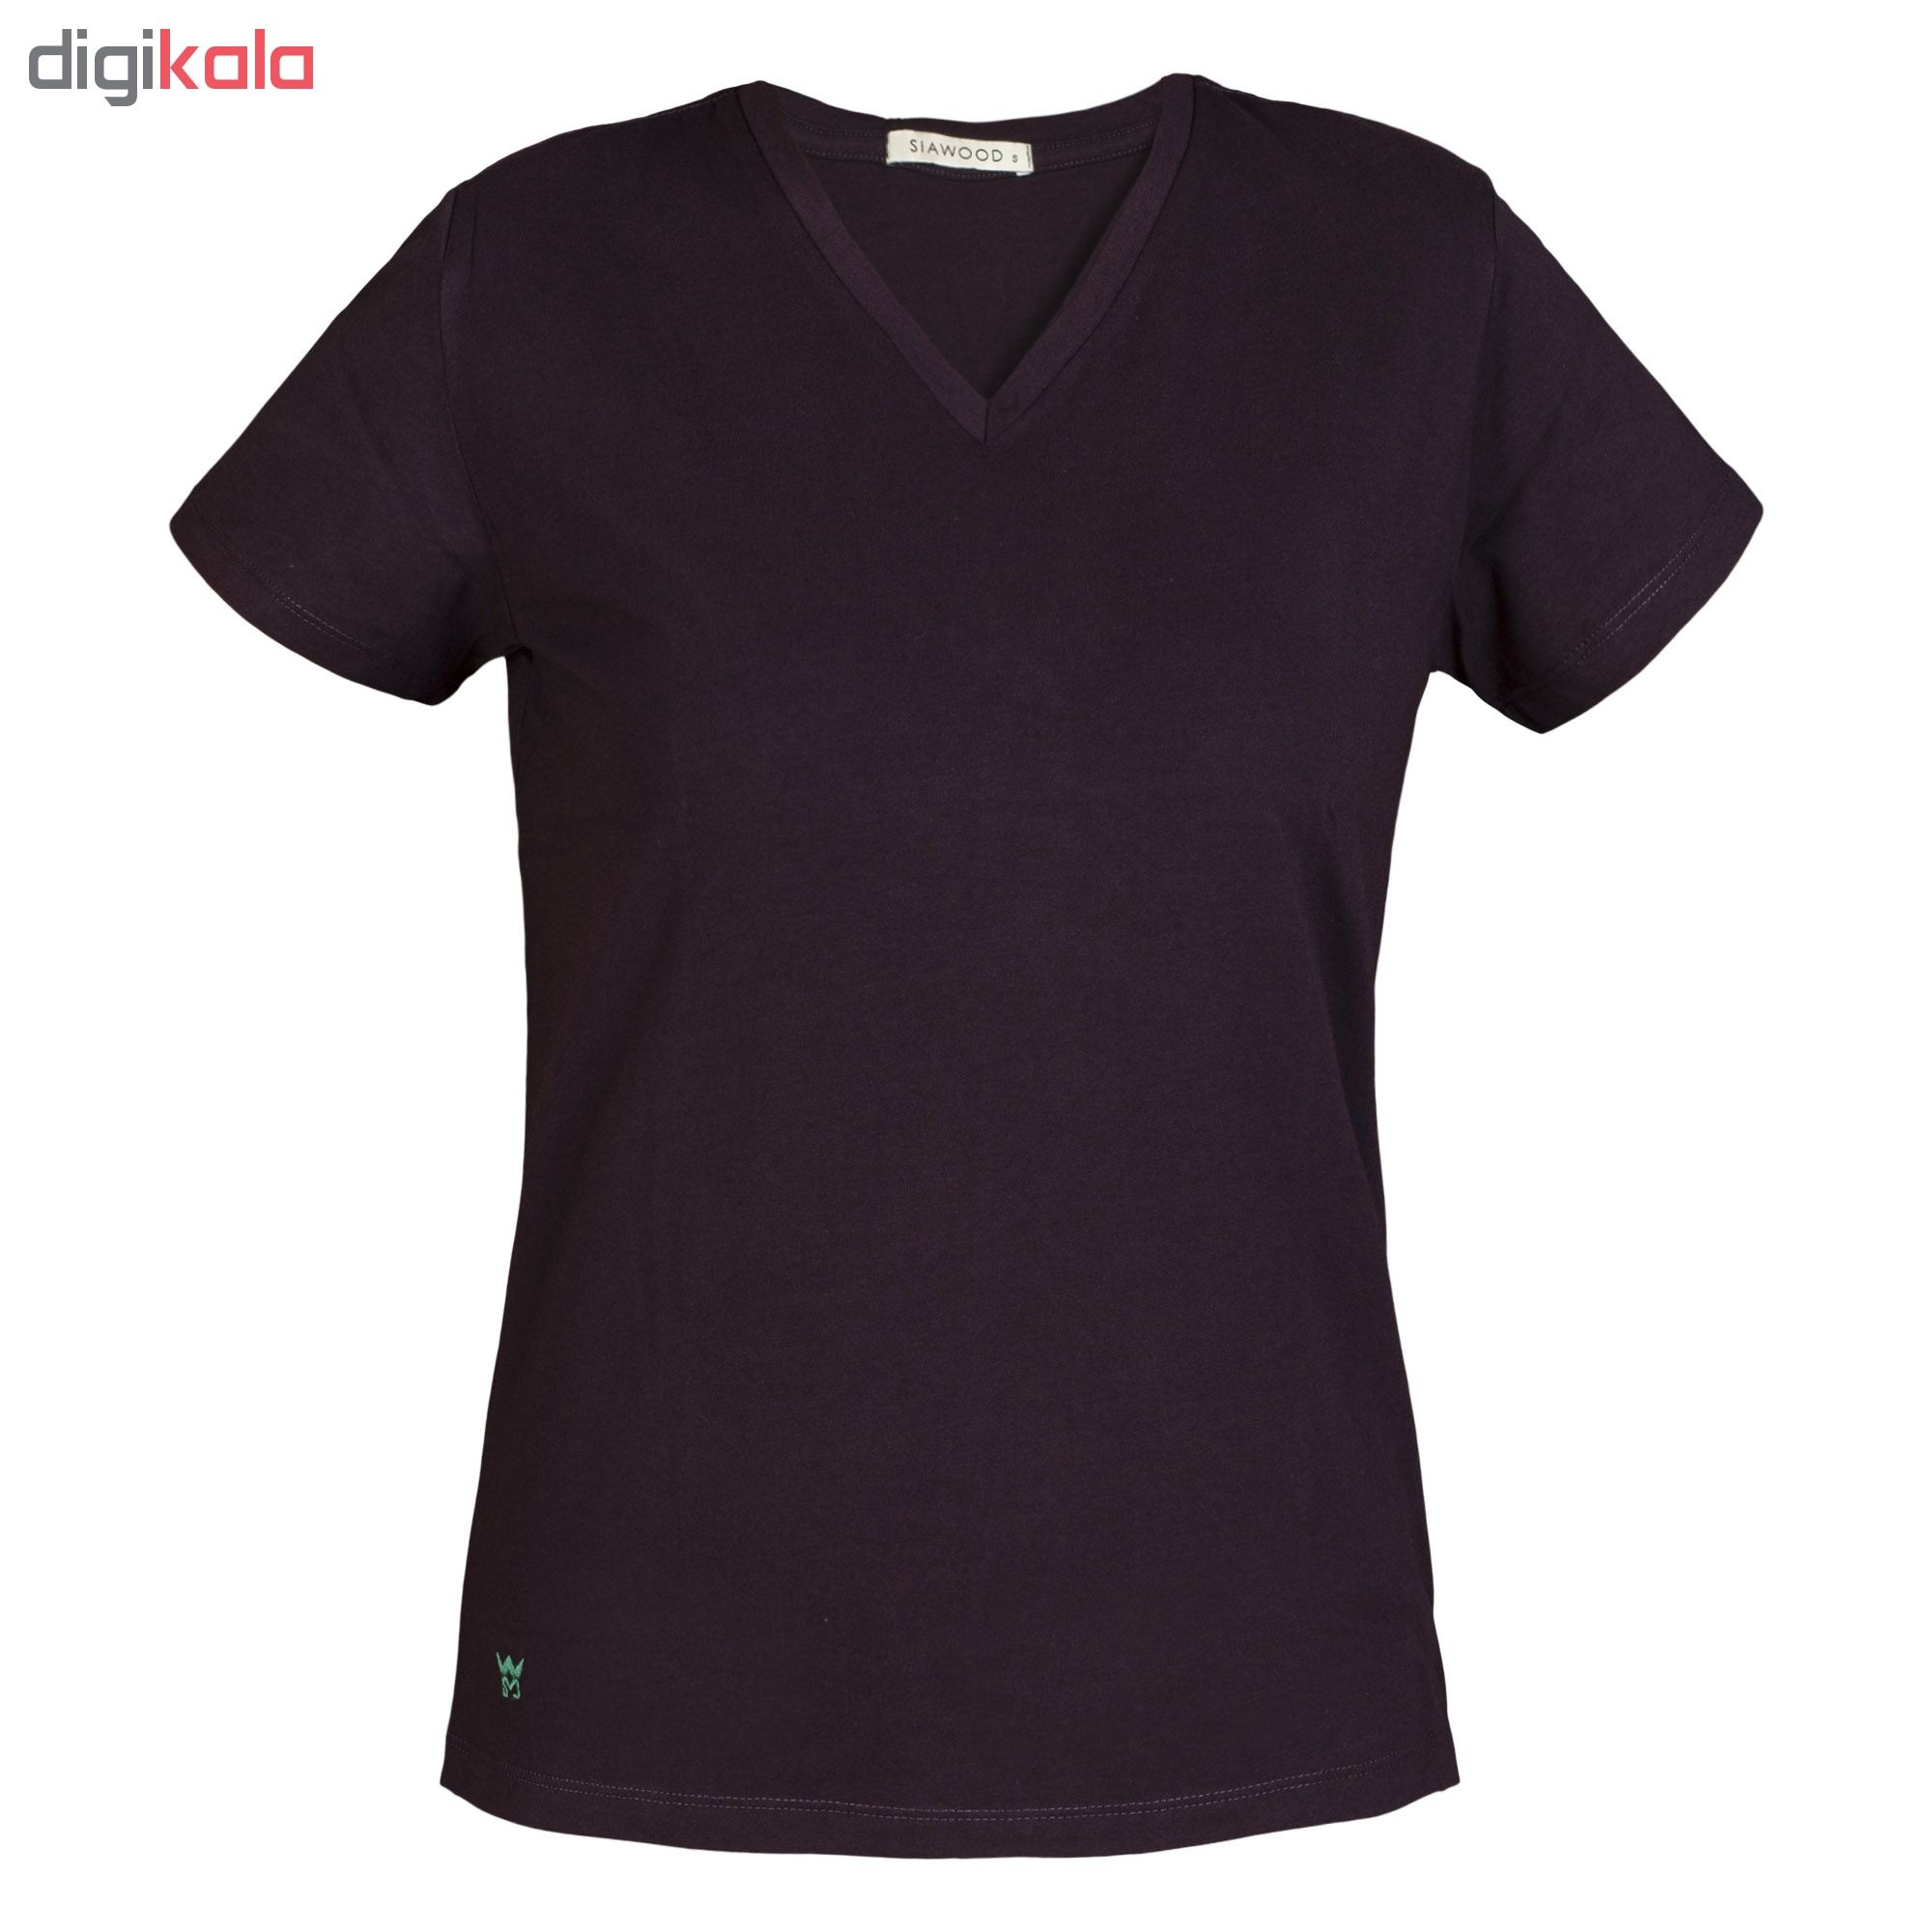 تي شرت زنانه سیاوود مدل V-BASIC کد 6100400-V0002 رنگ بادمجاني 